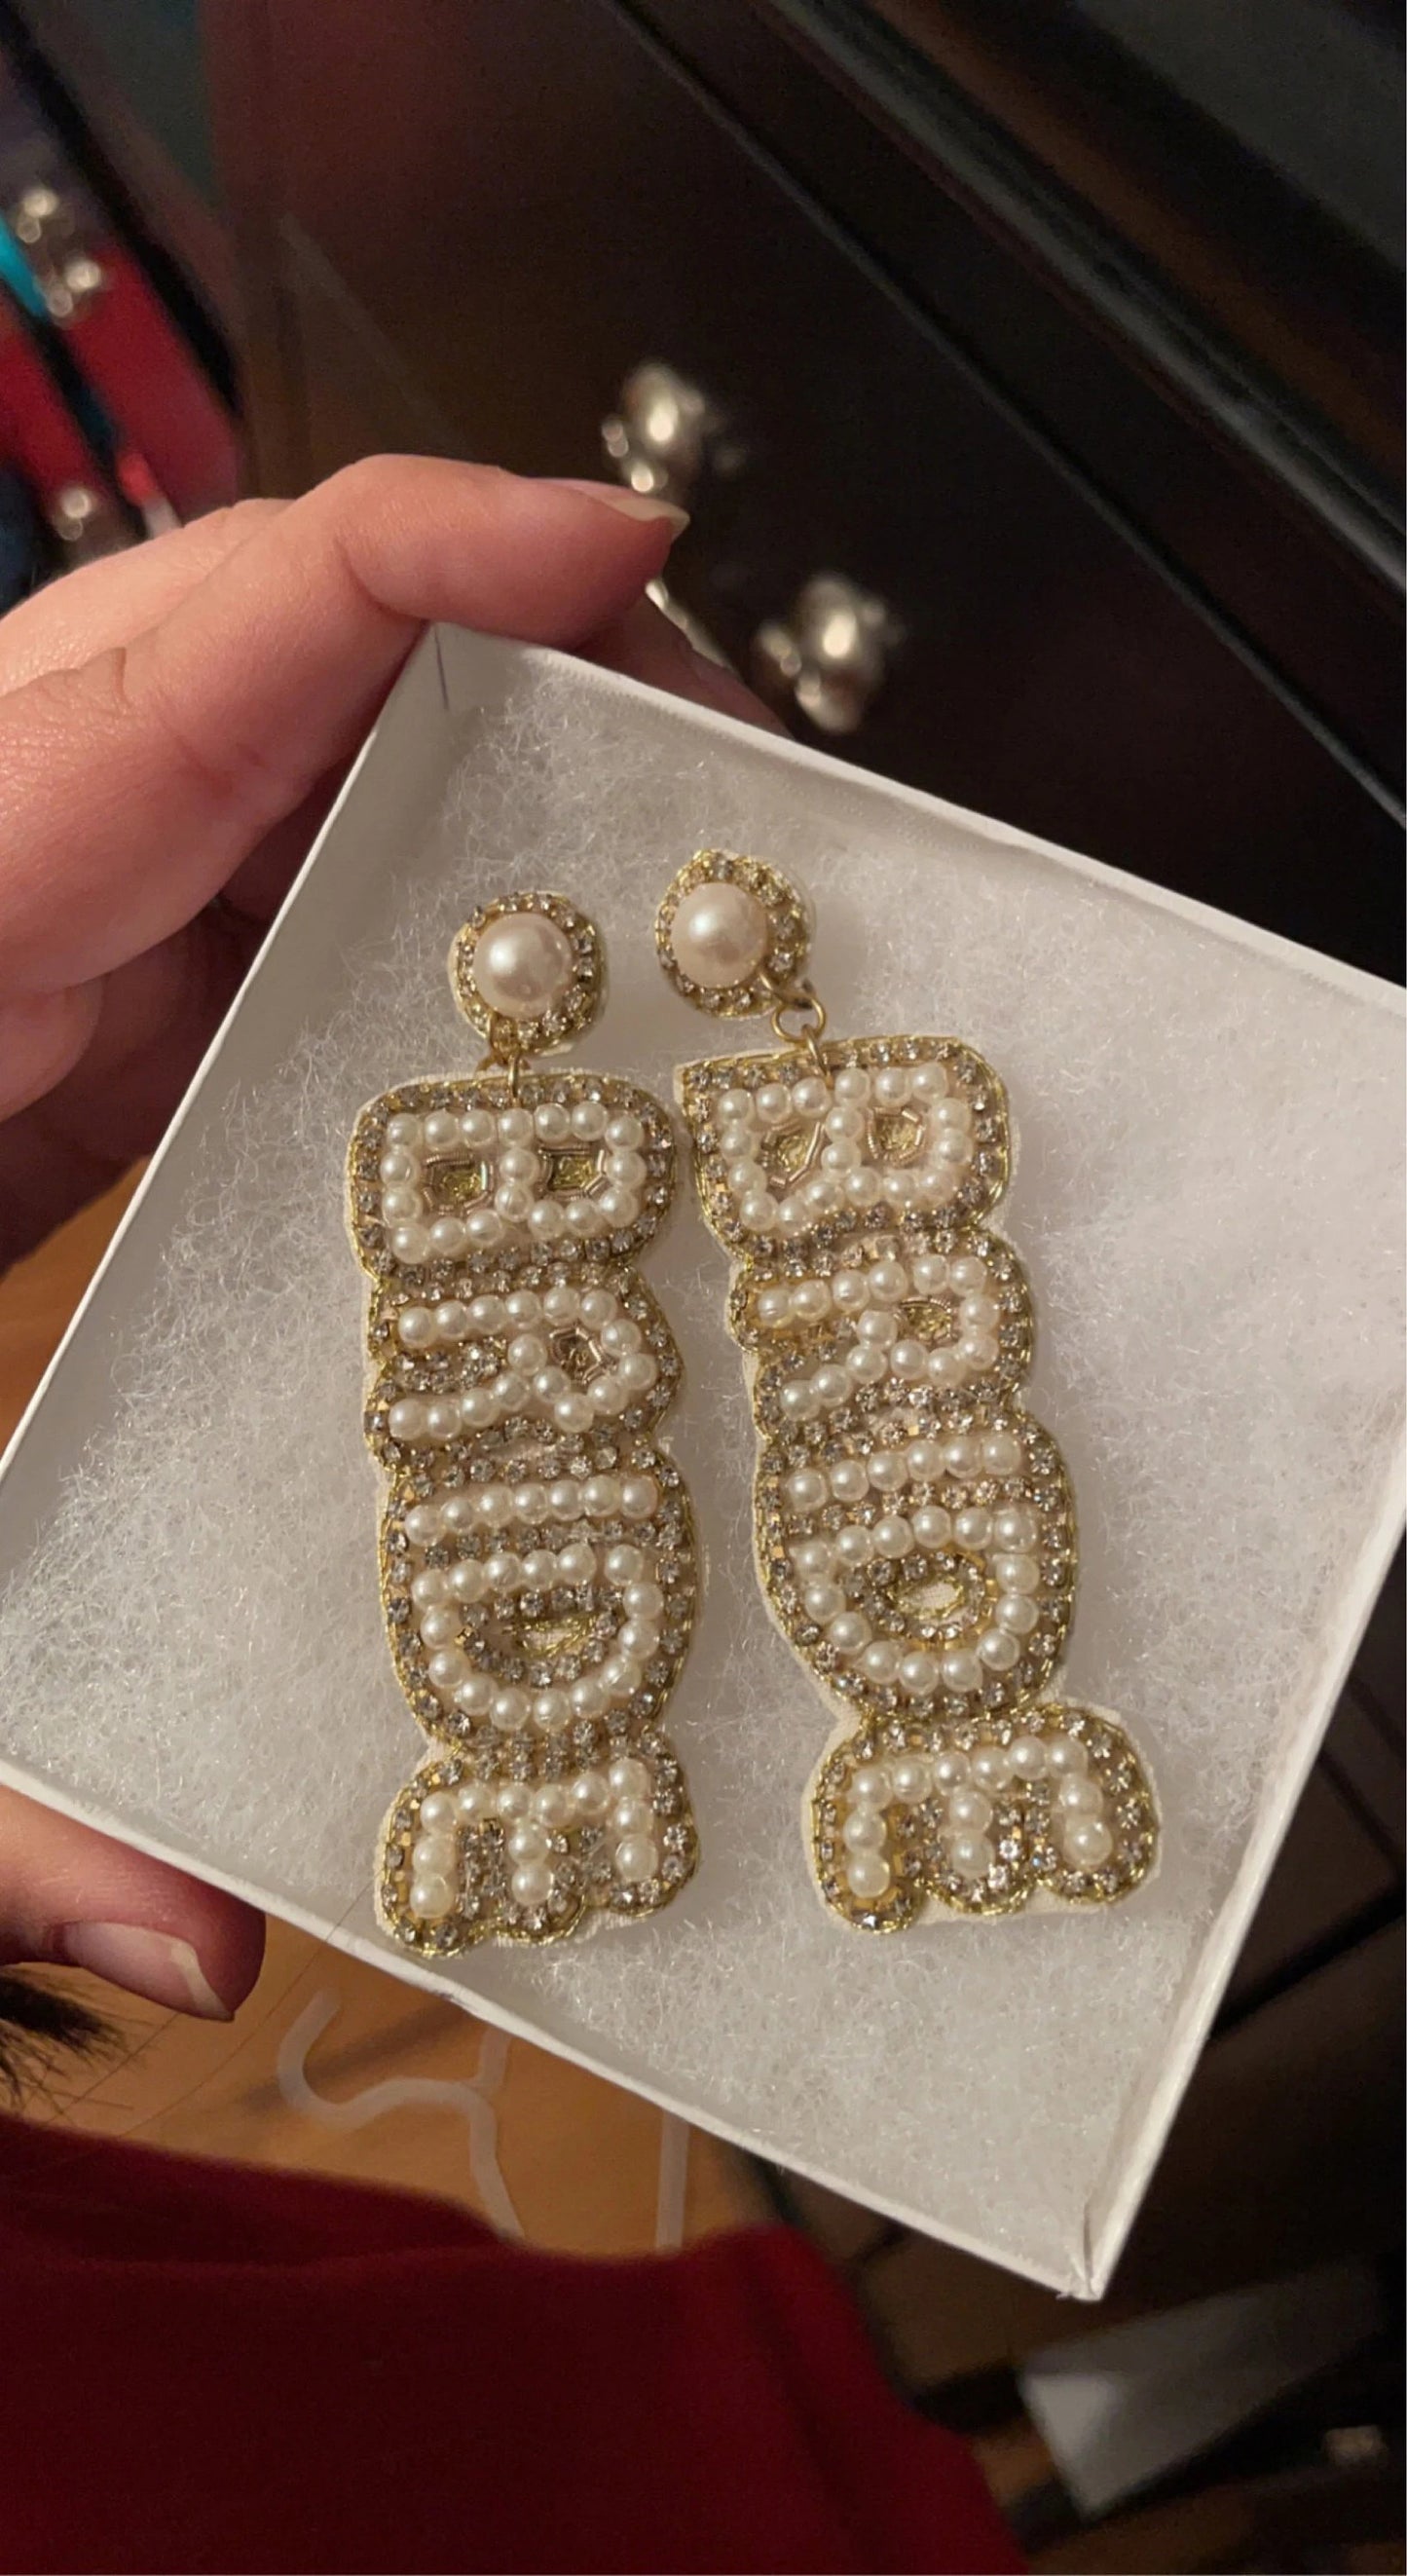 White & Gold Bride Beaded Earrings